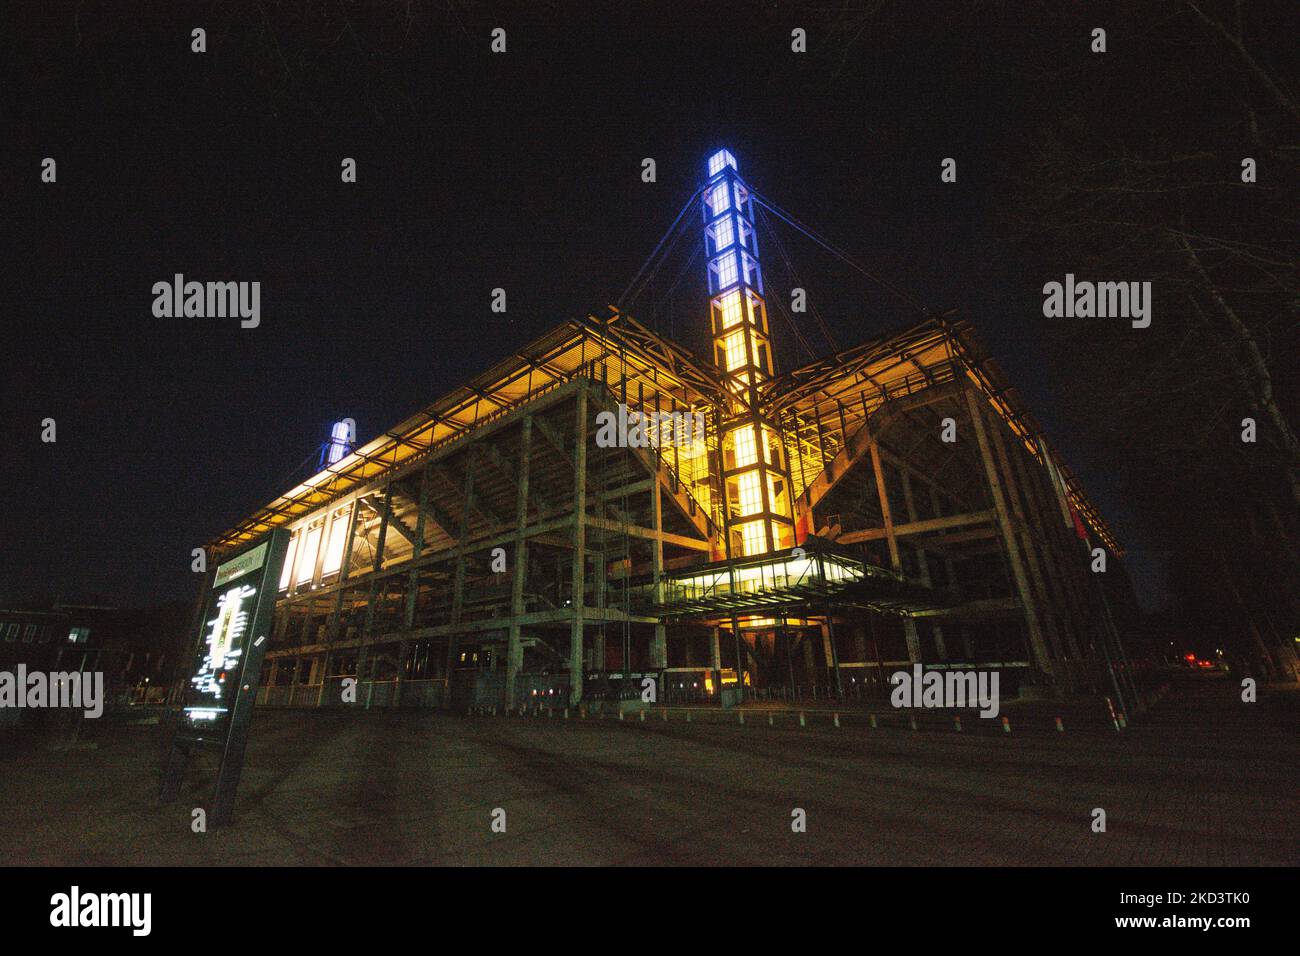 lo stadio rhein Energy è illuminato con luci blu e gialle per mostrare la loro solidarietà alla crisi Ukaine (Photo by Ying Tang/NurPhoto) Foto Stock